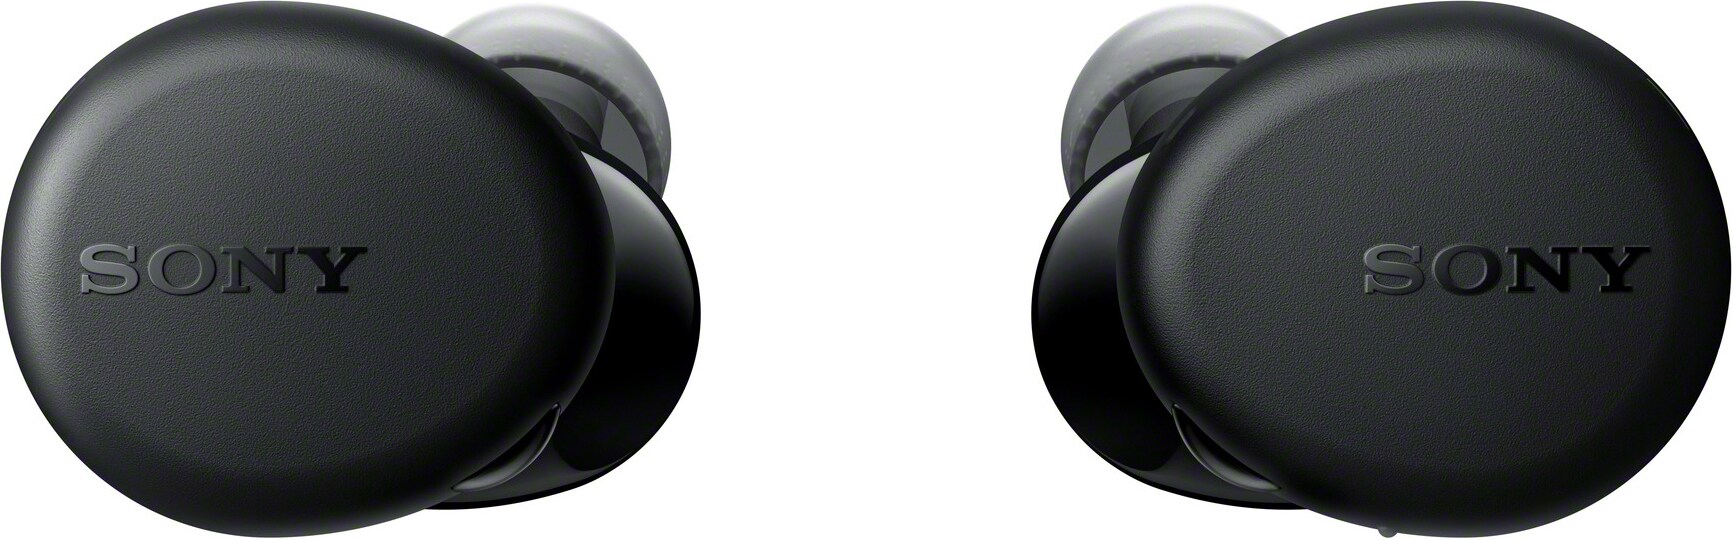 Sony WF-XB700 täysin langattomat in-ear kuulokkeet (musta) - Kuulokkeet -  Gigantti